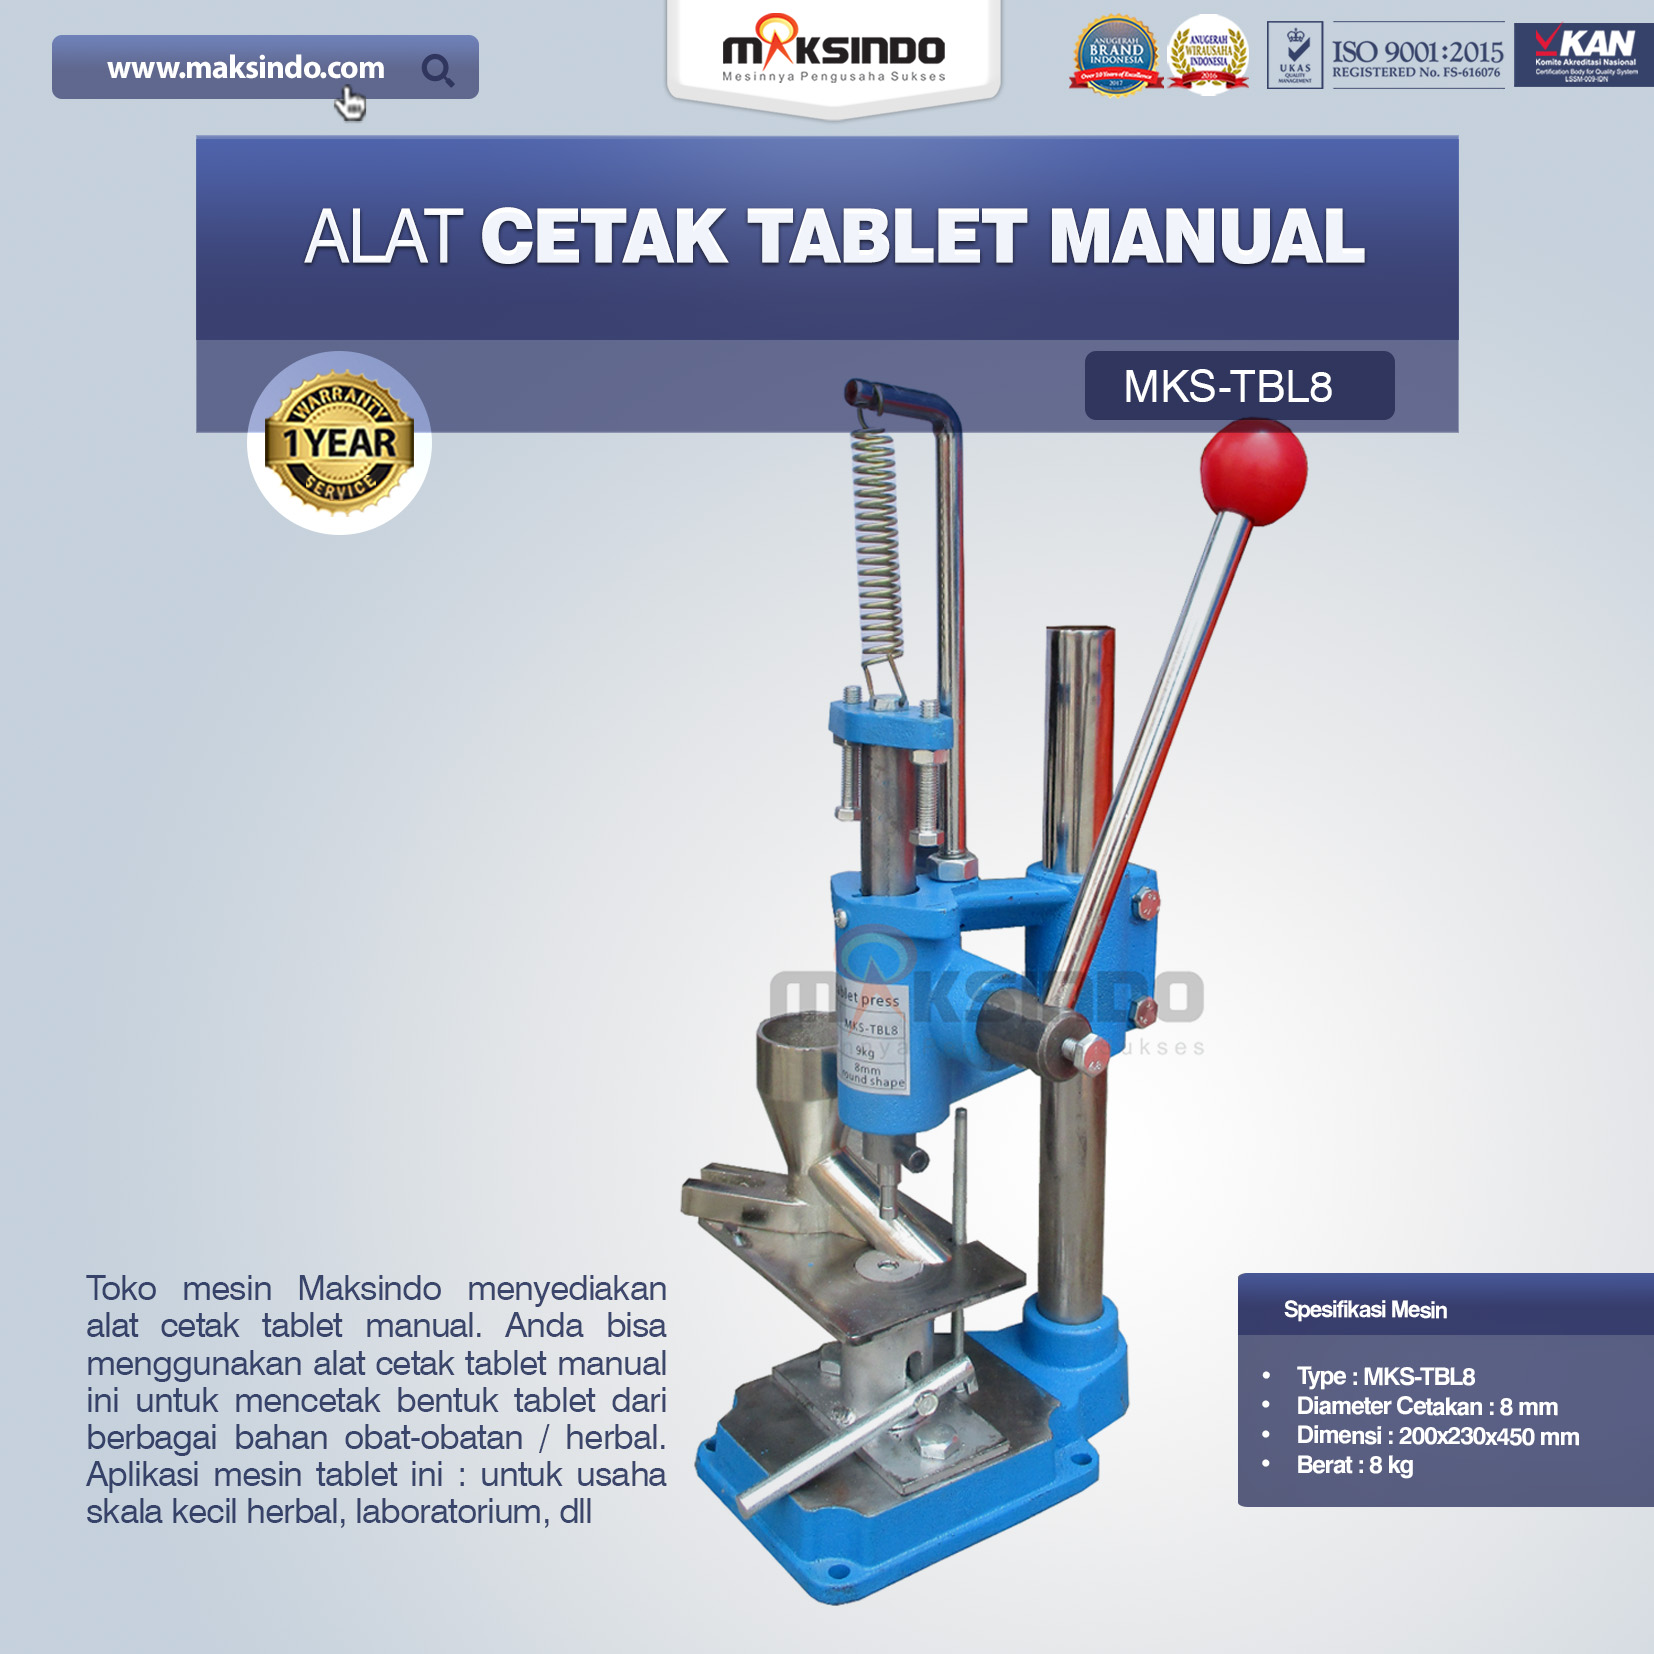 Jual Alat Cetak Tablet Manual MKS-TBL8 di Medan